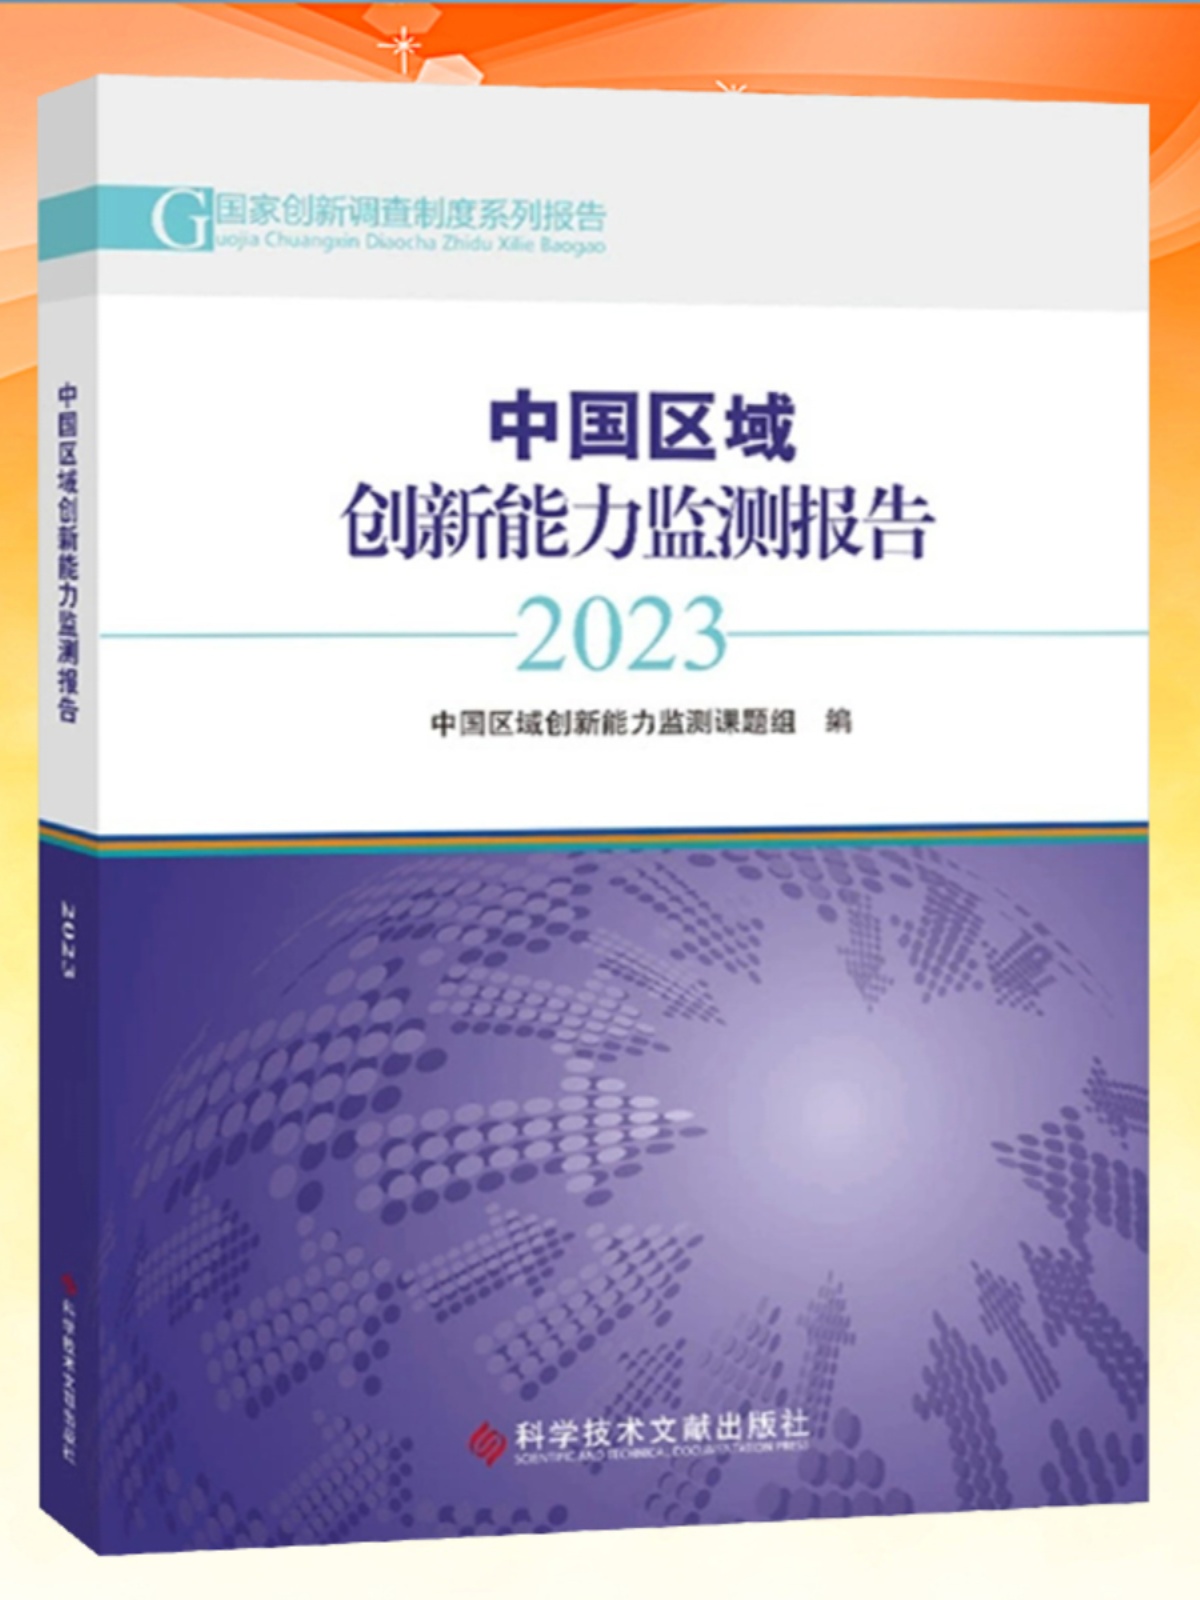 正版现货 中国区域创新能力监测报告2023 中国区域创新能力监测课题组创造能力研究报告书籍 科学技术文献出版社